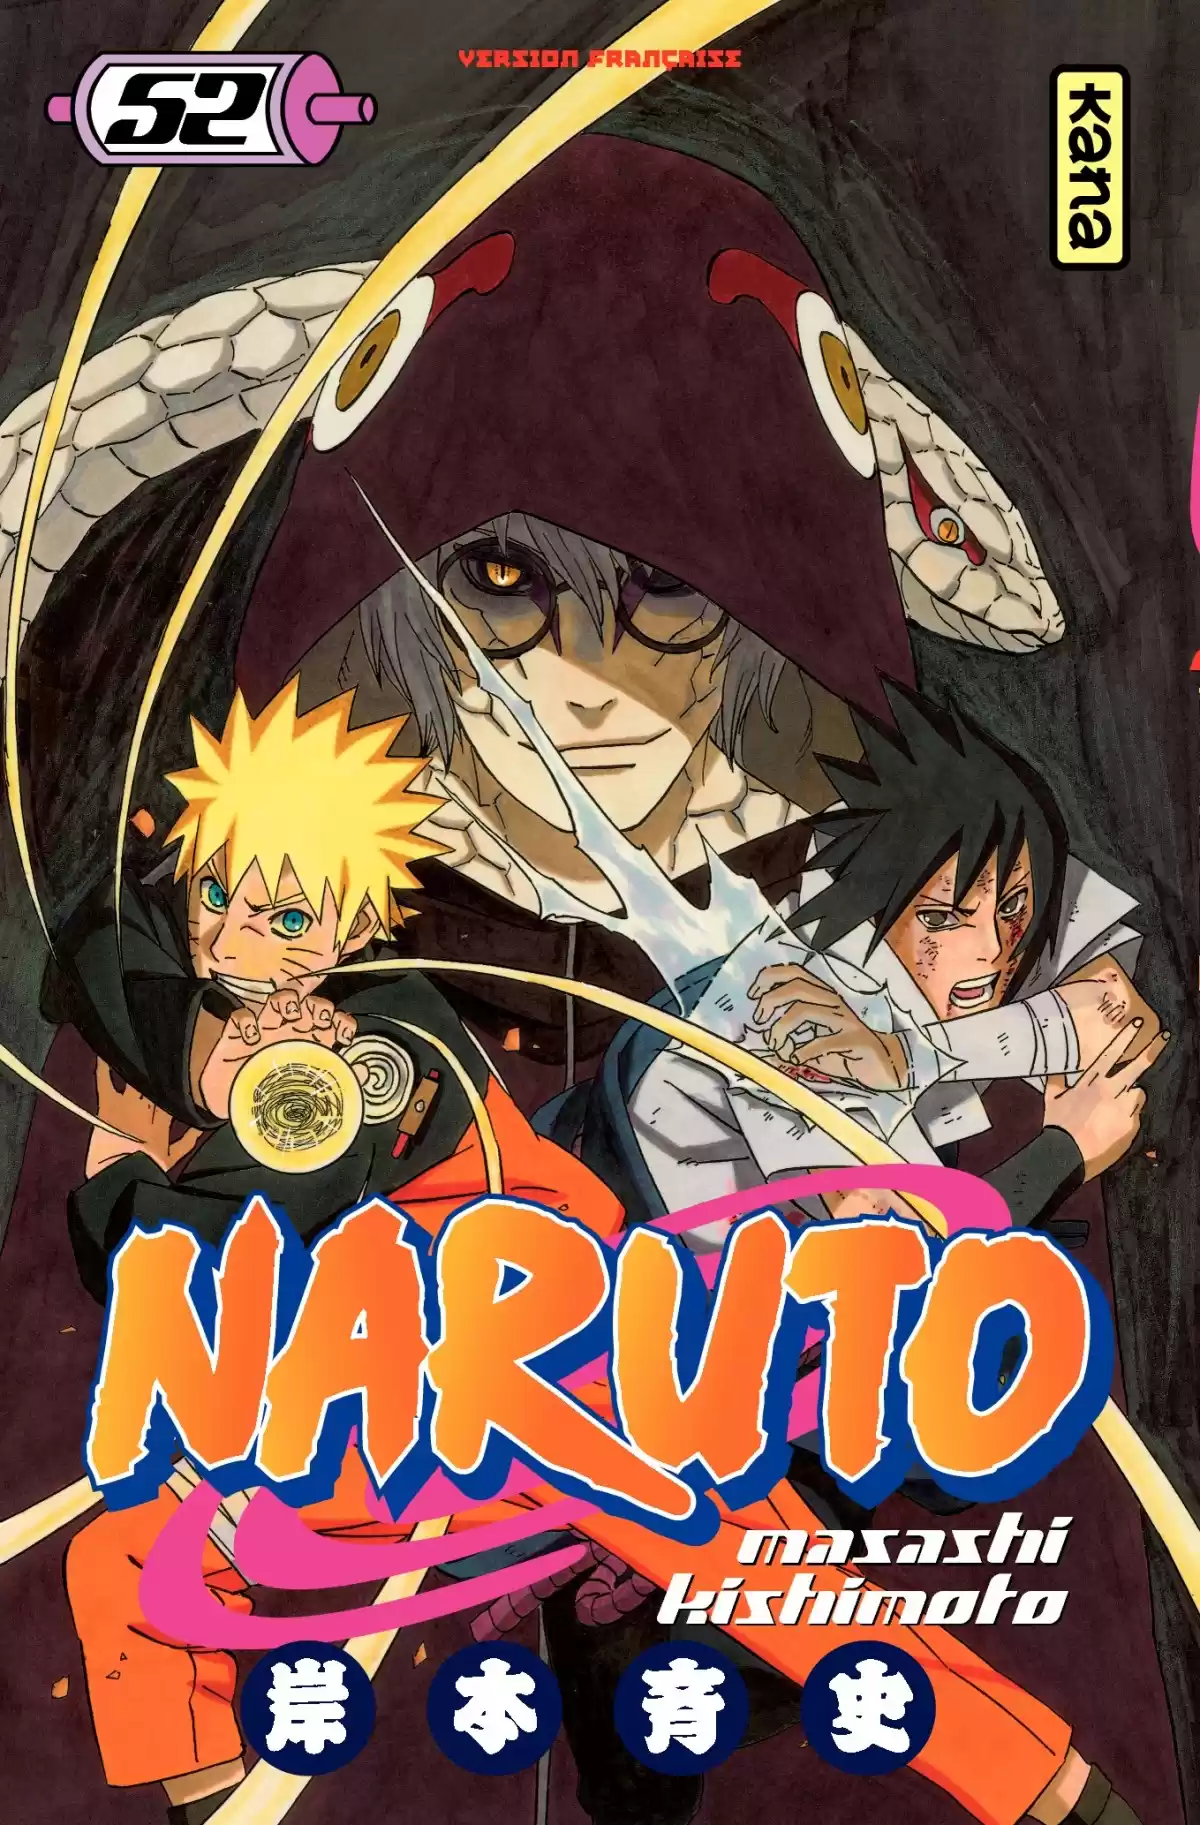 Naruto Volume 52 page 1